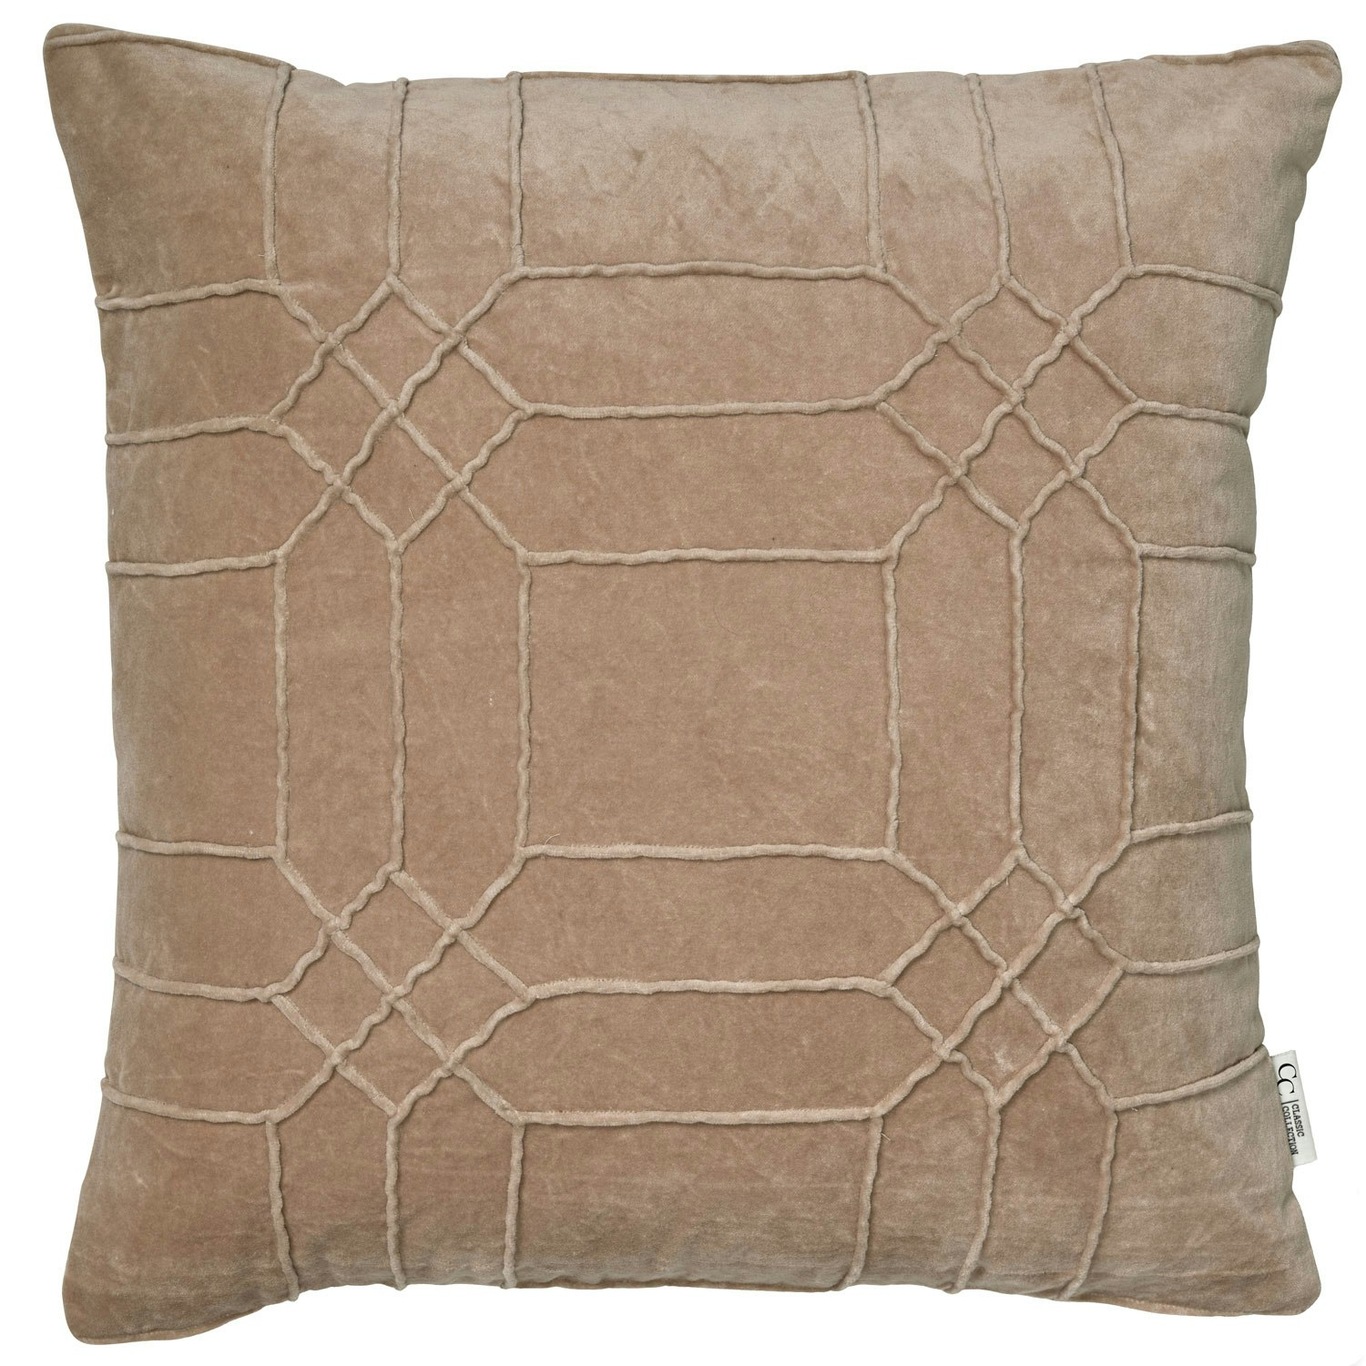 Delhi Cushion Cover 50x50 cm, Simple Taupe Brown